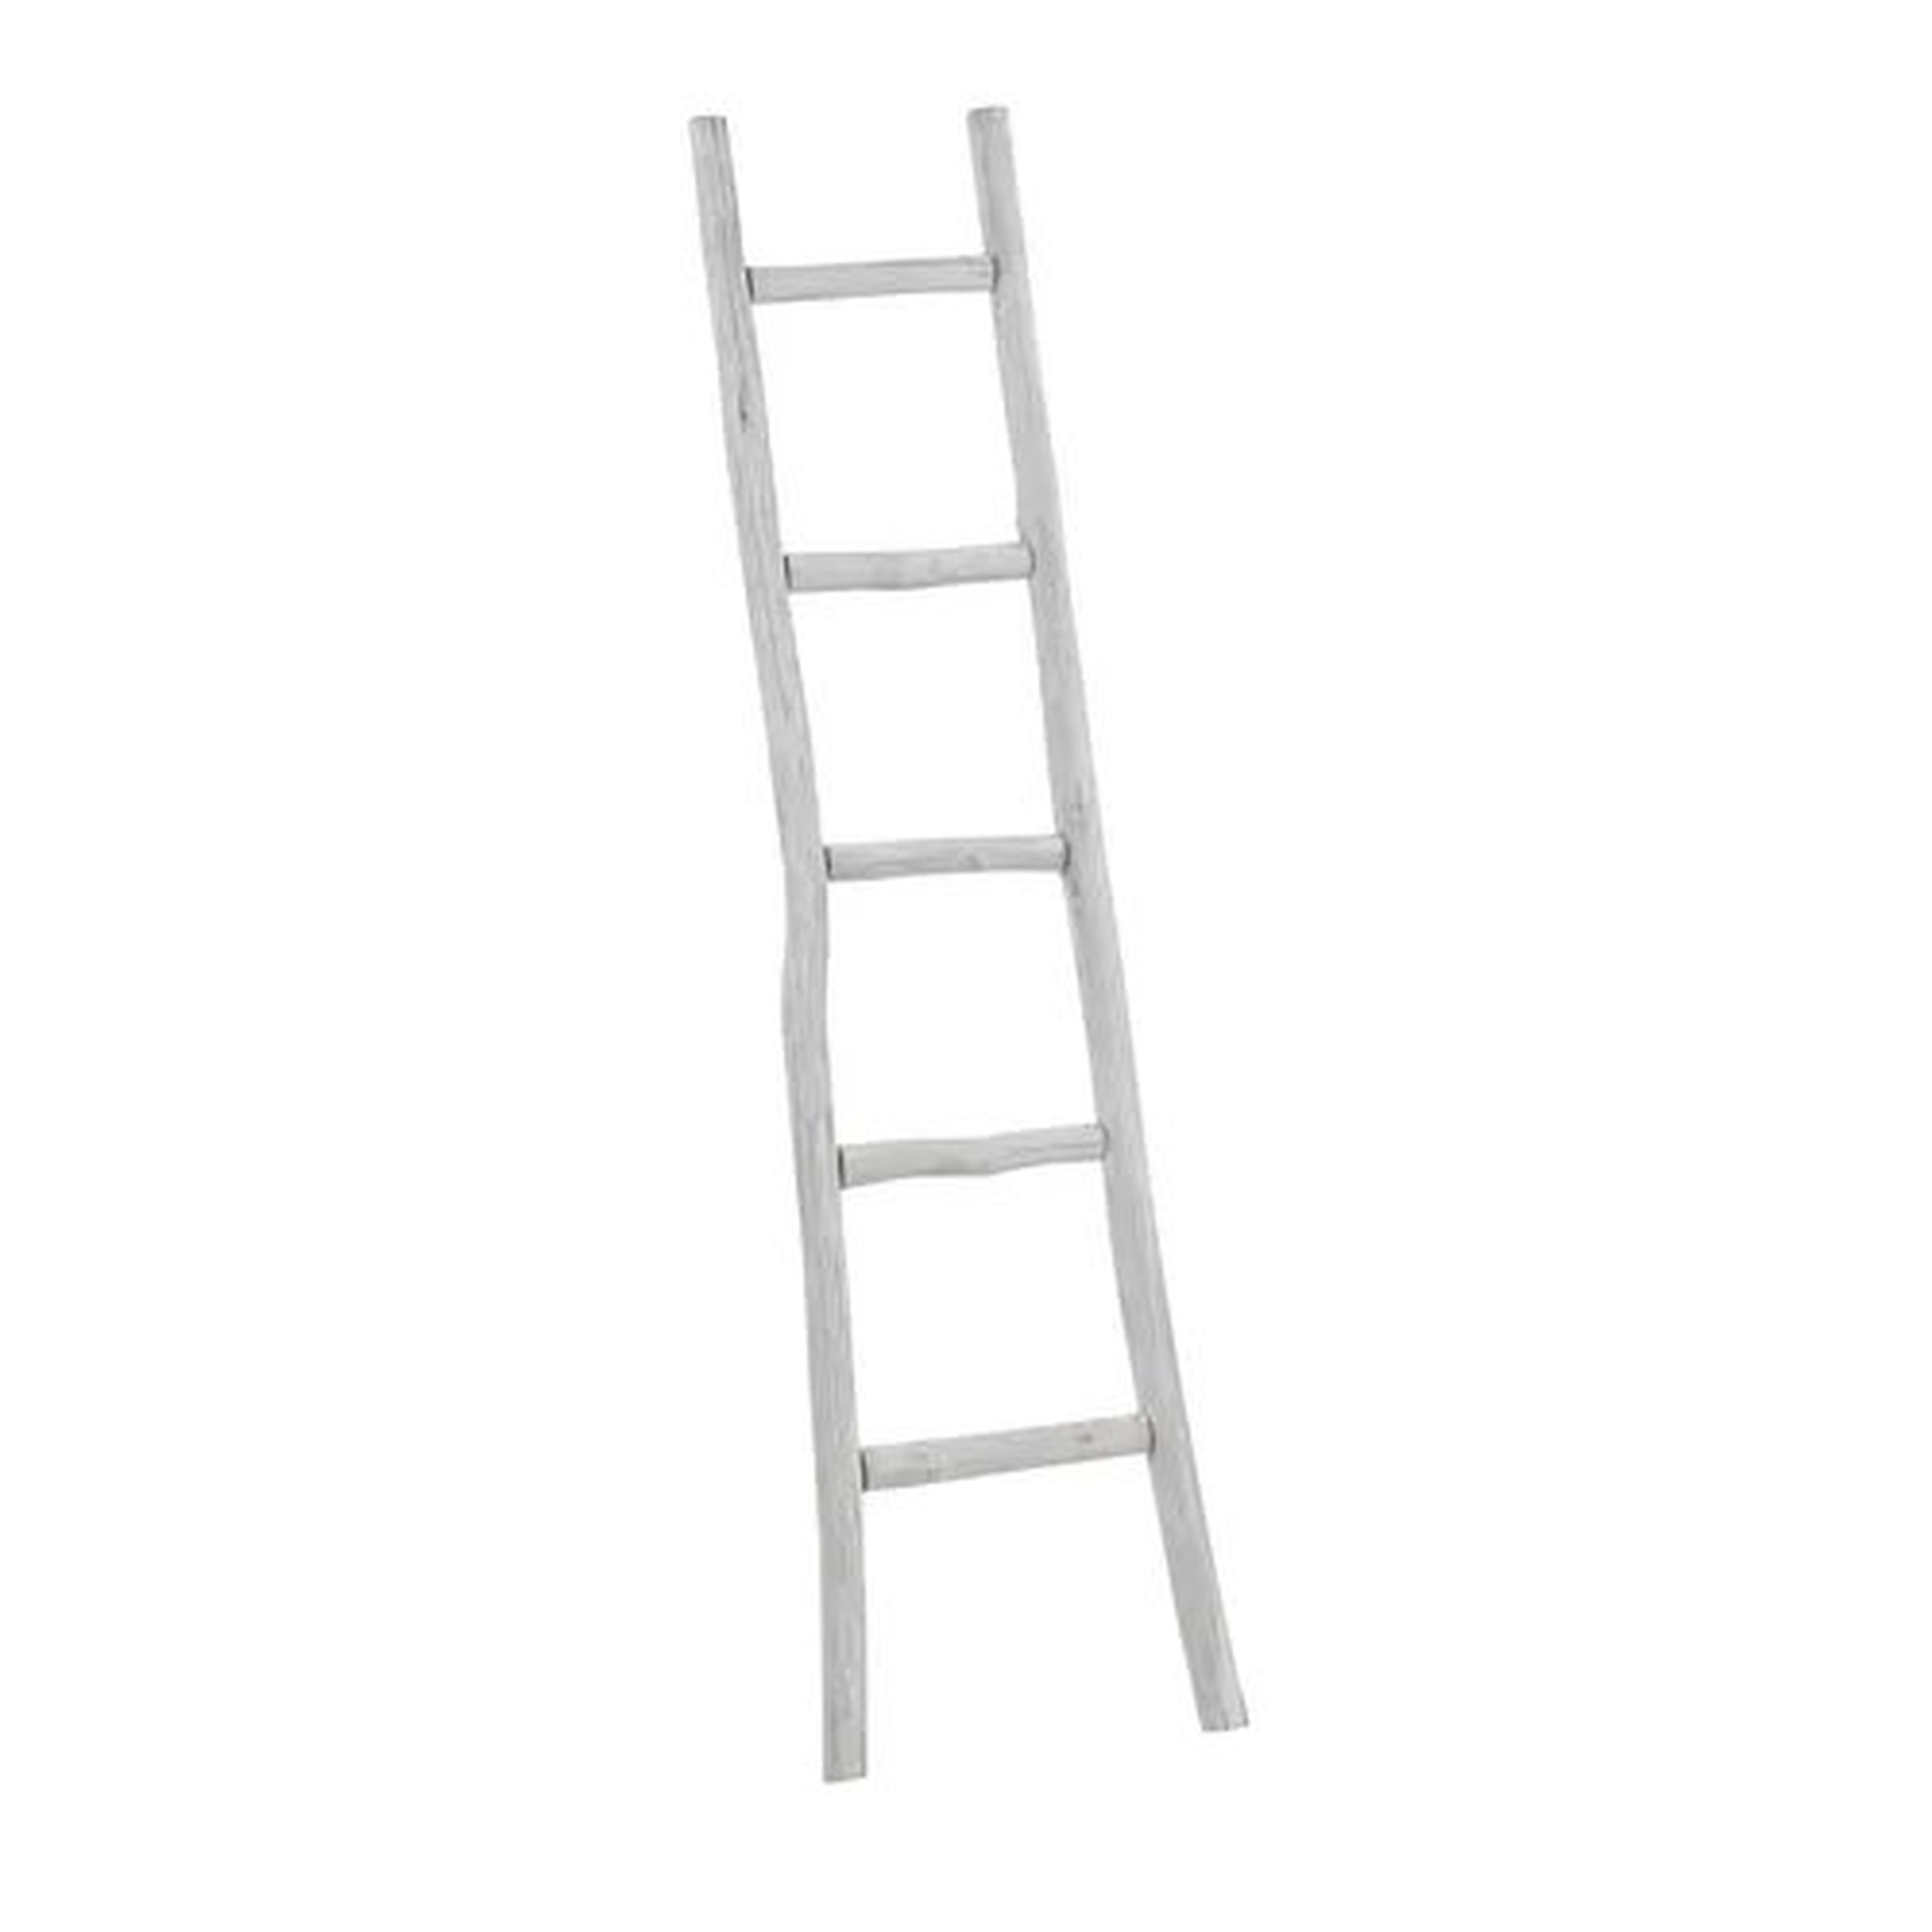 5 ft Blanket Ladder- white - Wayfair